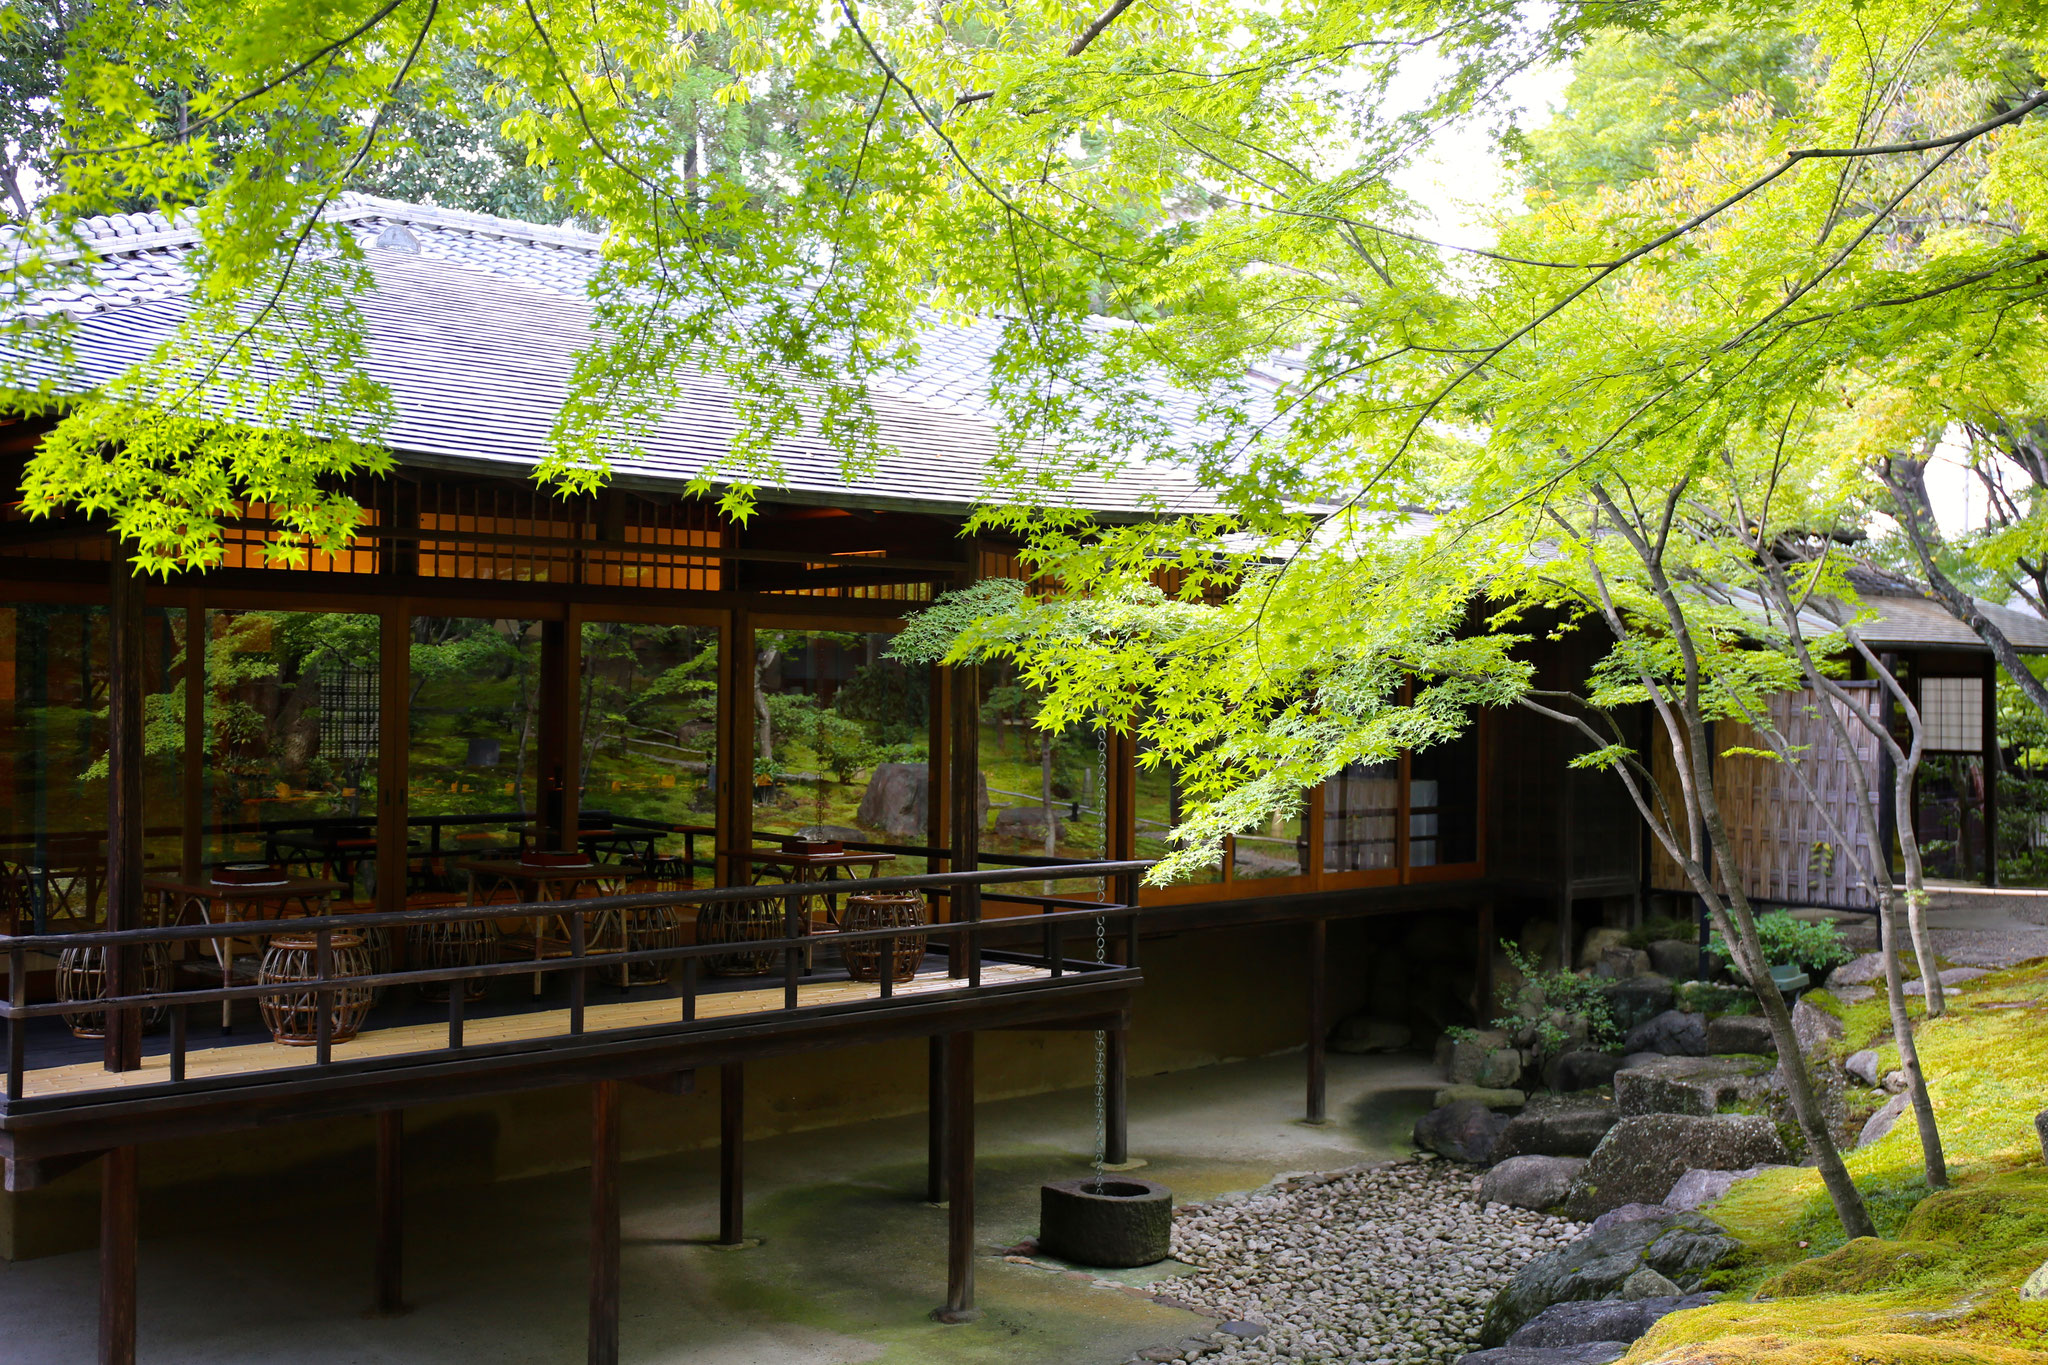 昭和天皇の御宿泊所として建てられた座敷「御幸の間」と観月台